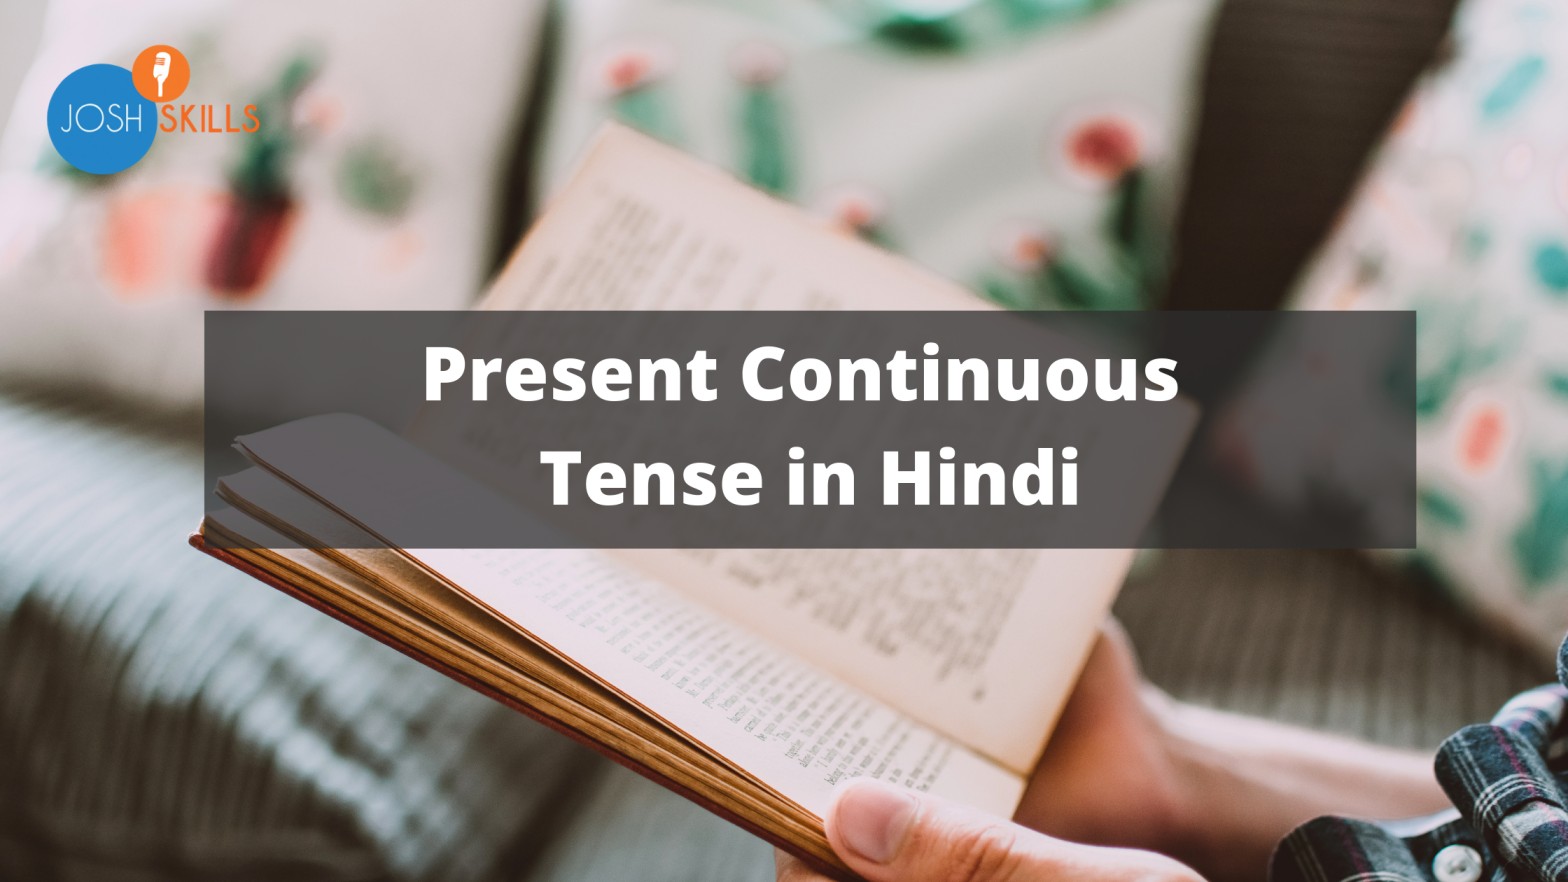 present-continuous-tense-in-hindi-josh